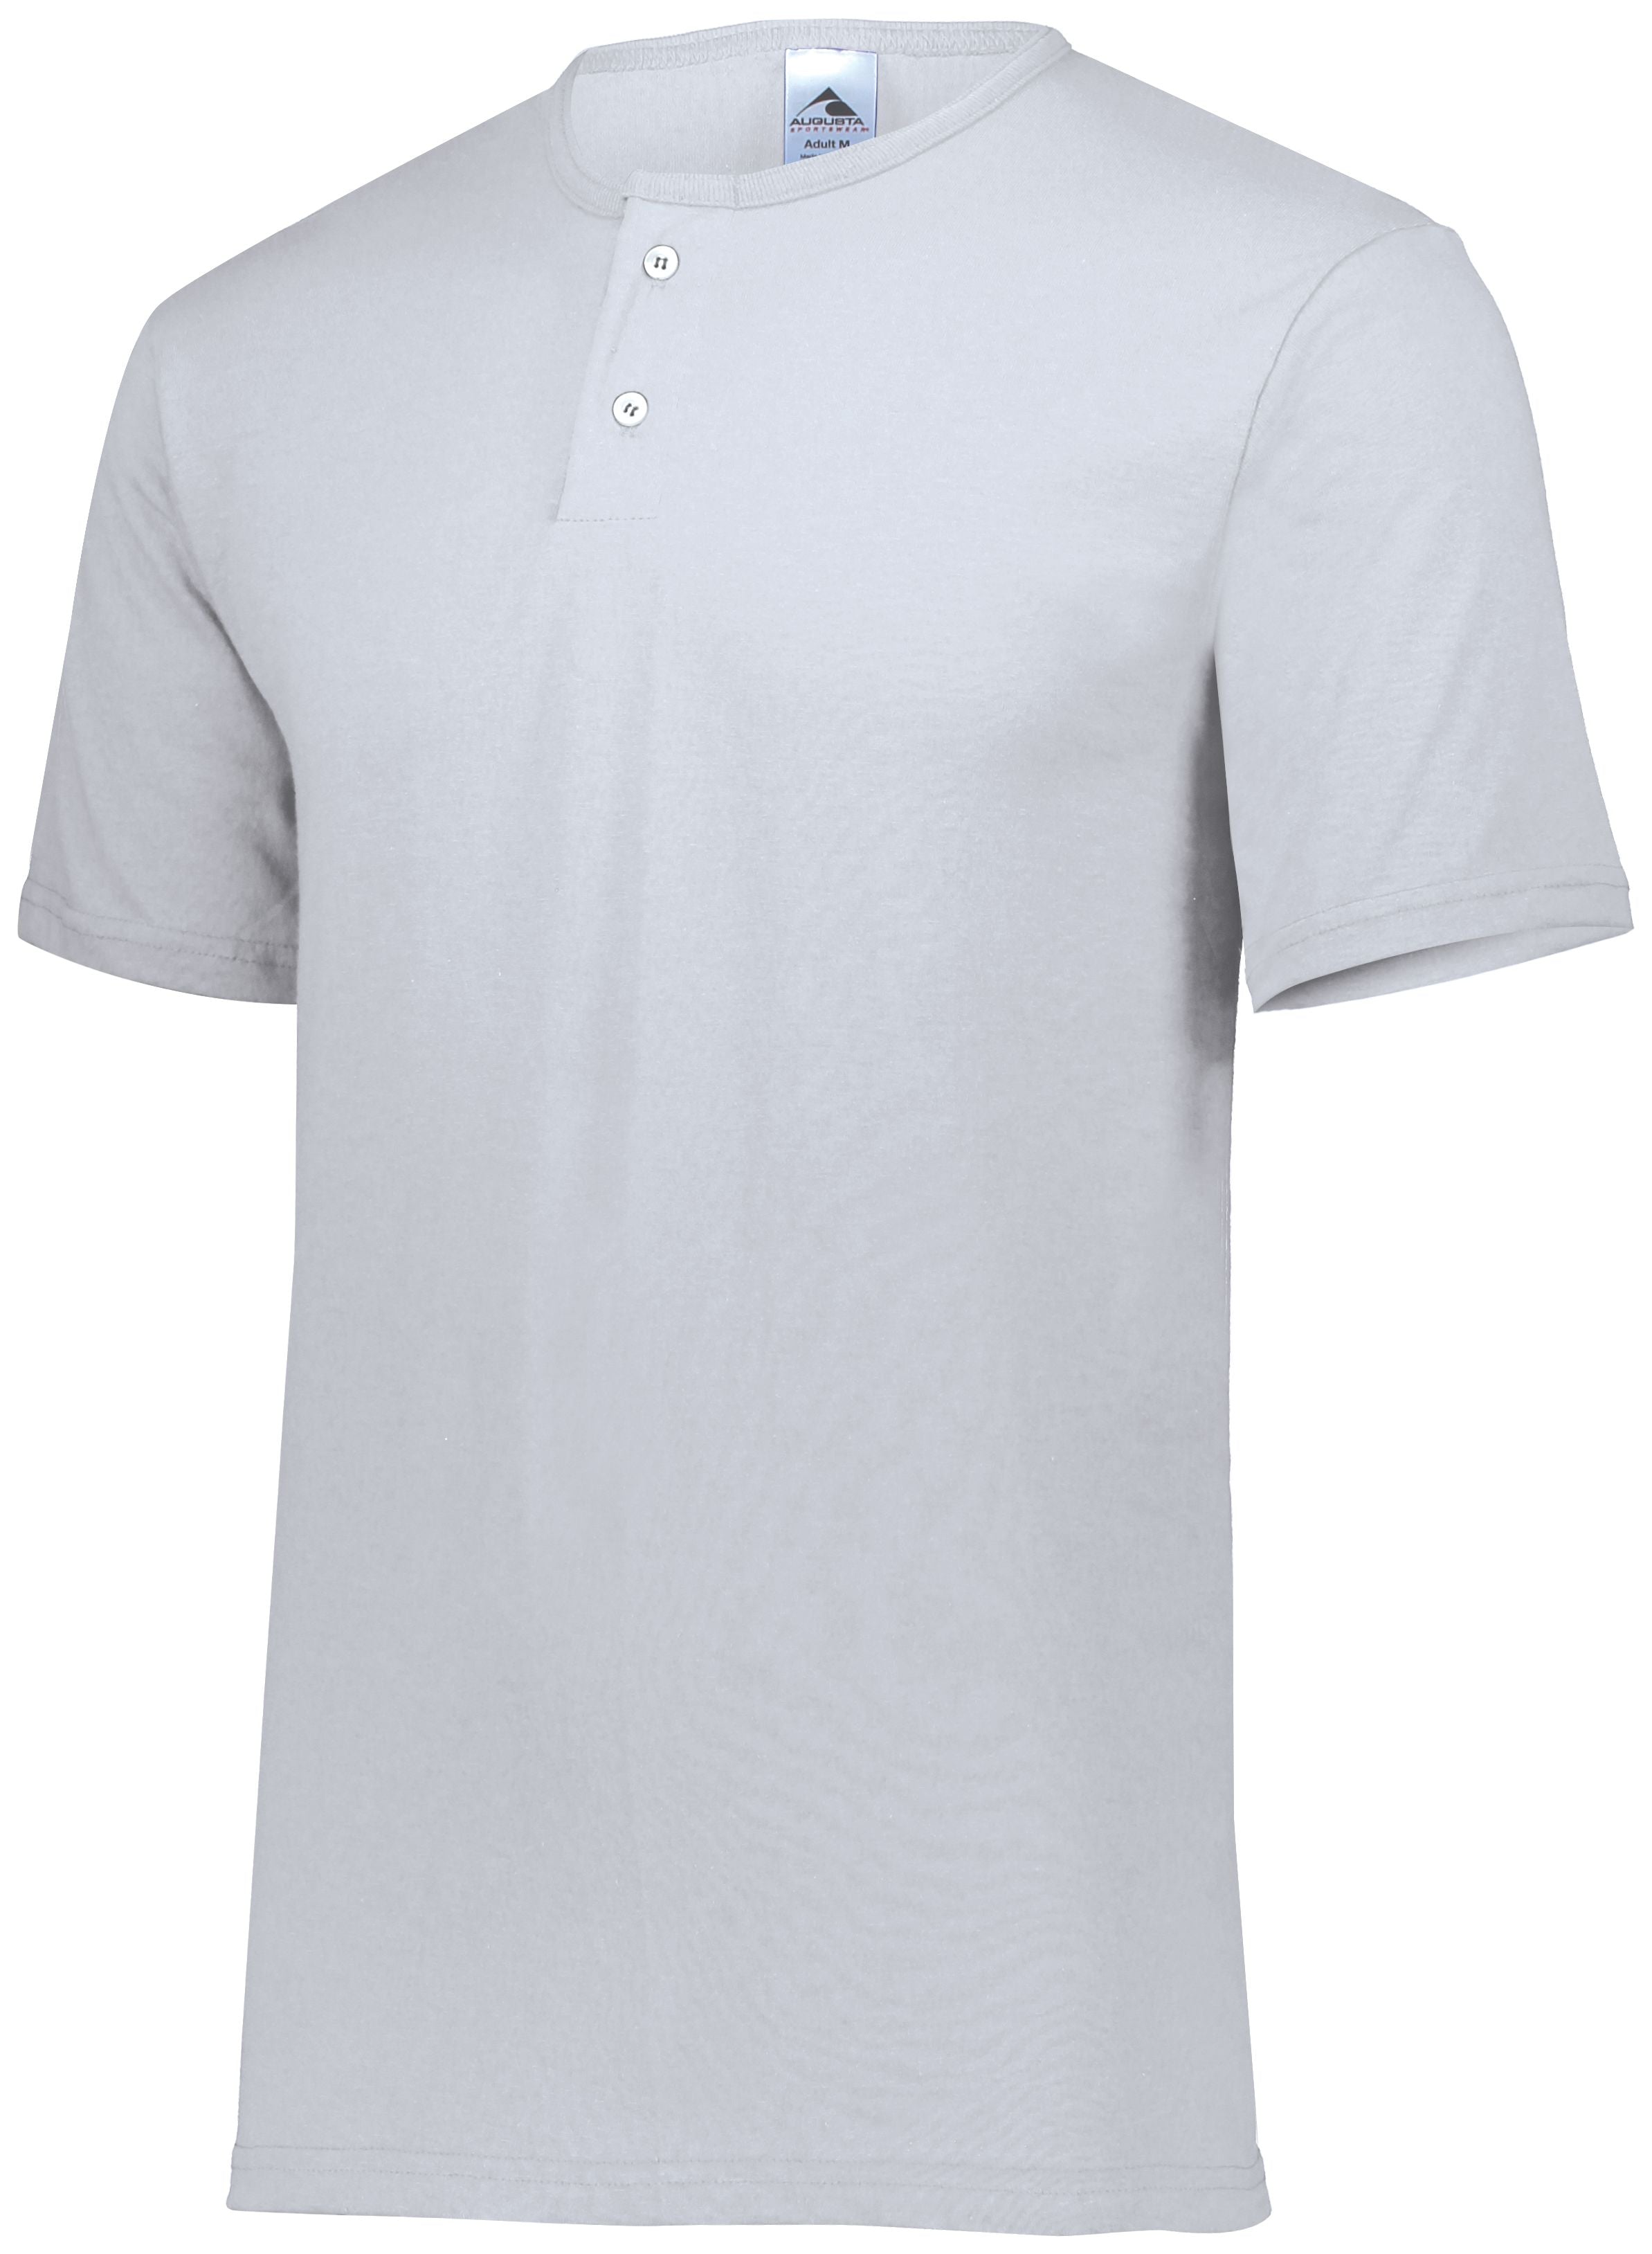 Augusta Sportswear Two-Button Baseball Jersey